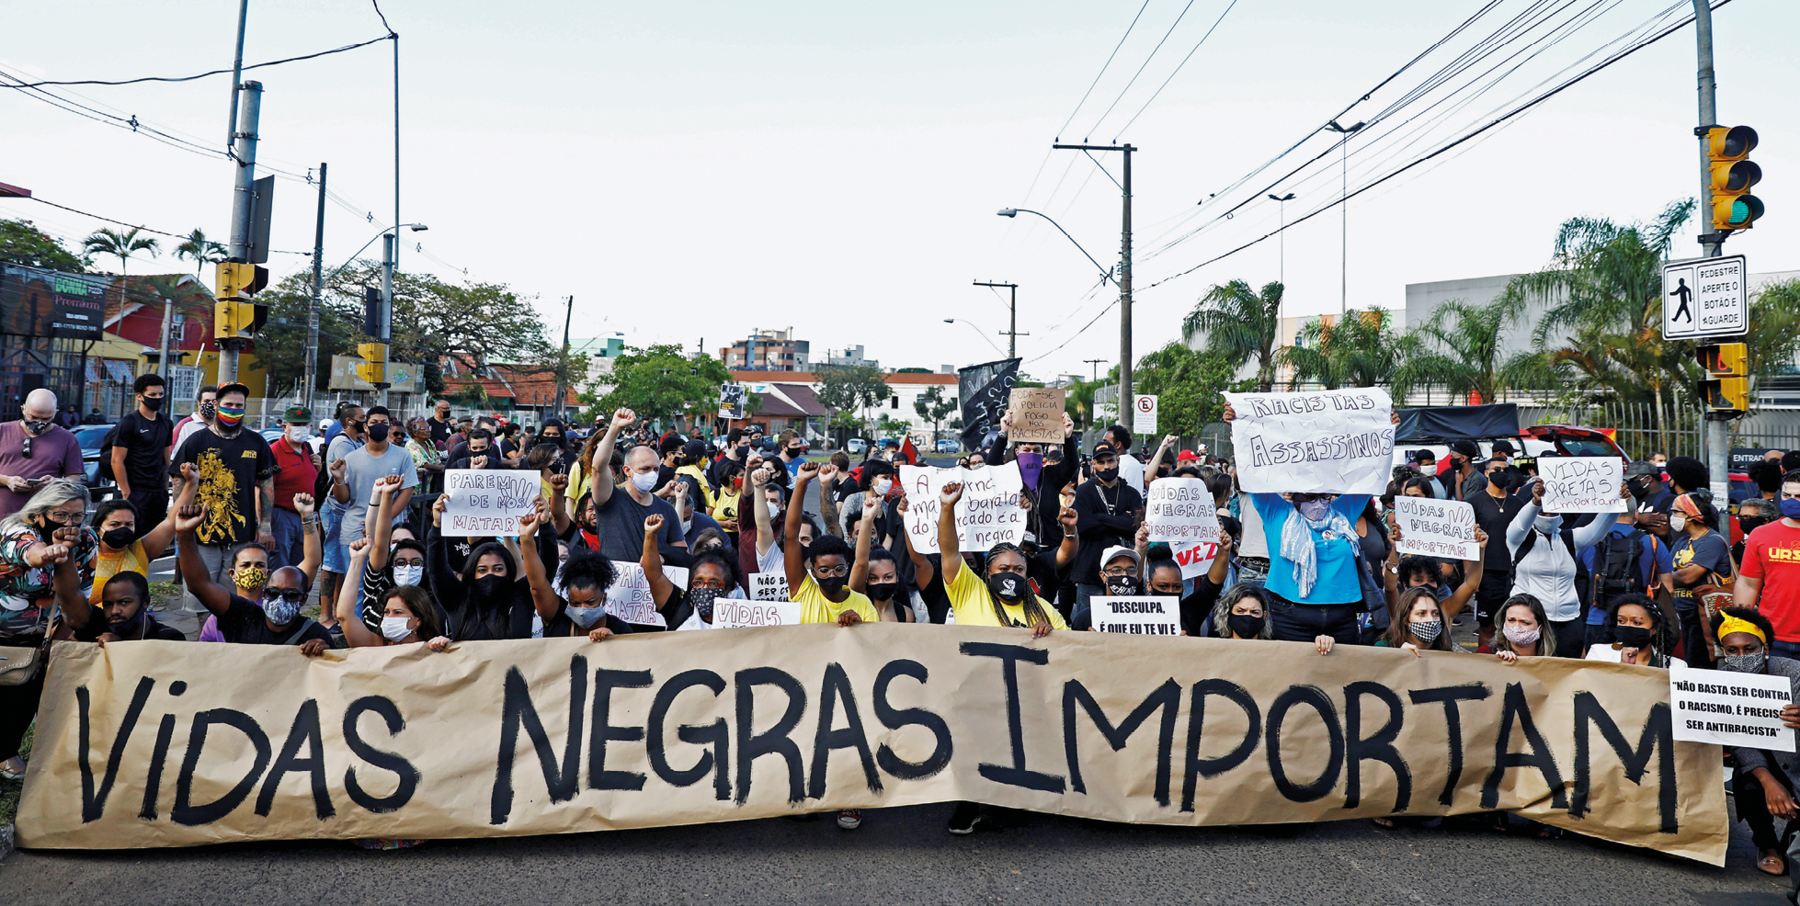 Fotografia. Em uma via pública, uma multidão de pessoas em manifestação, portando cartazes e faixas, com destaque para o texto: 'Vidas negras importam'.